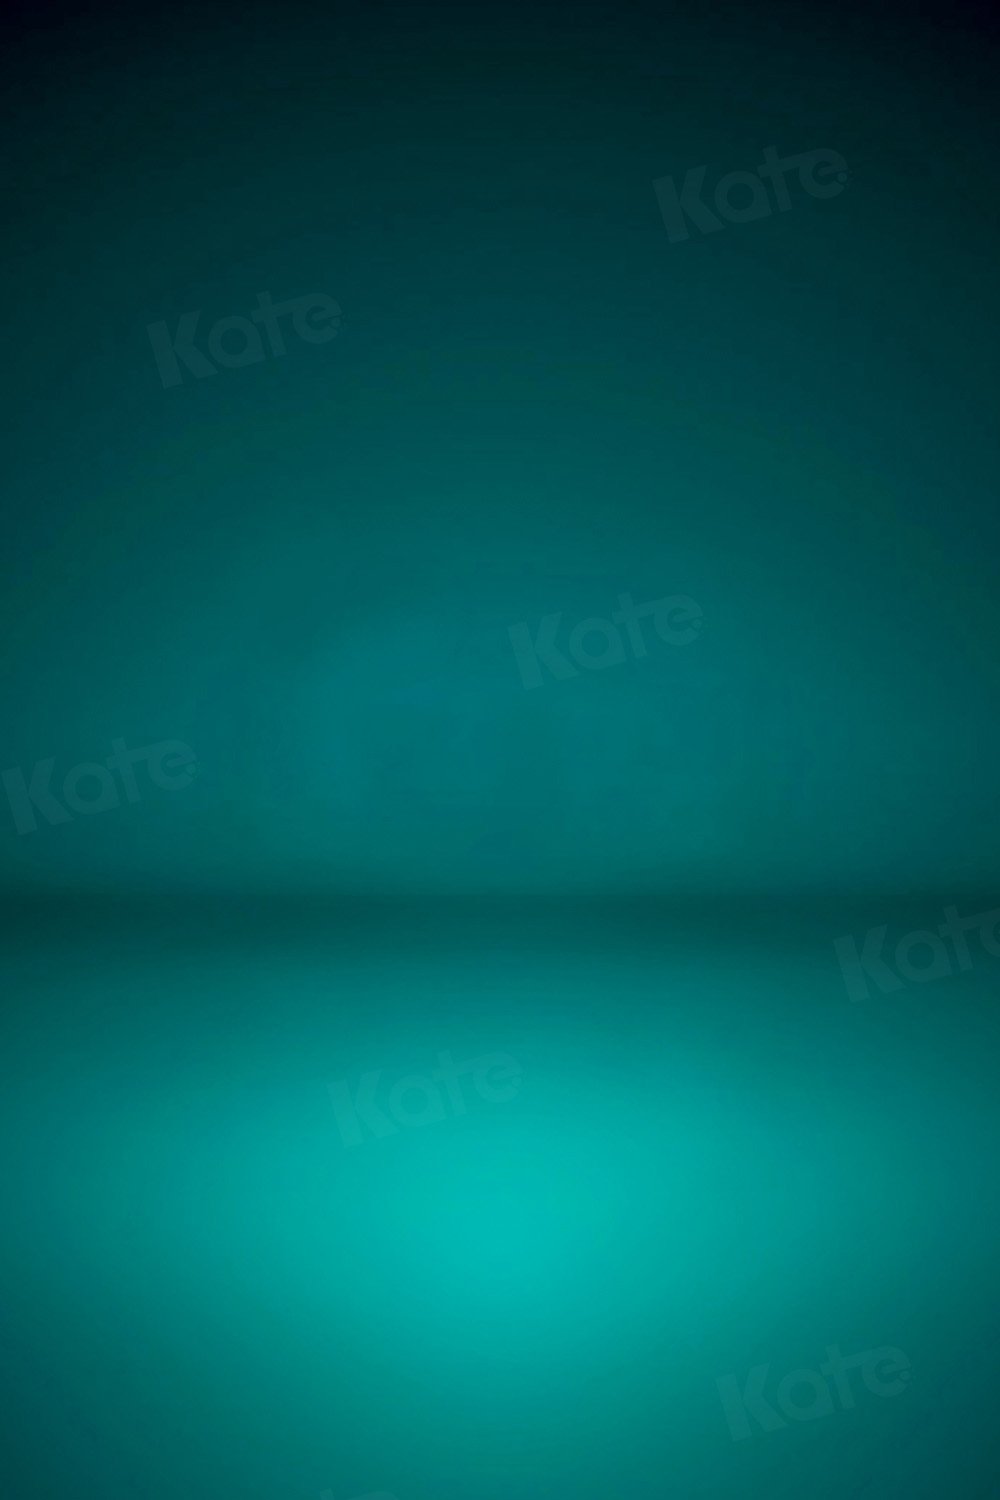 Kate Abstrakter grüner Hintergrund Retro